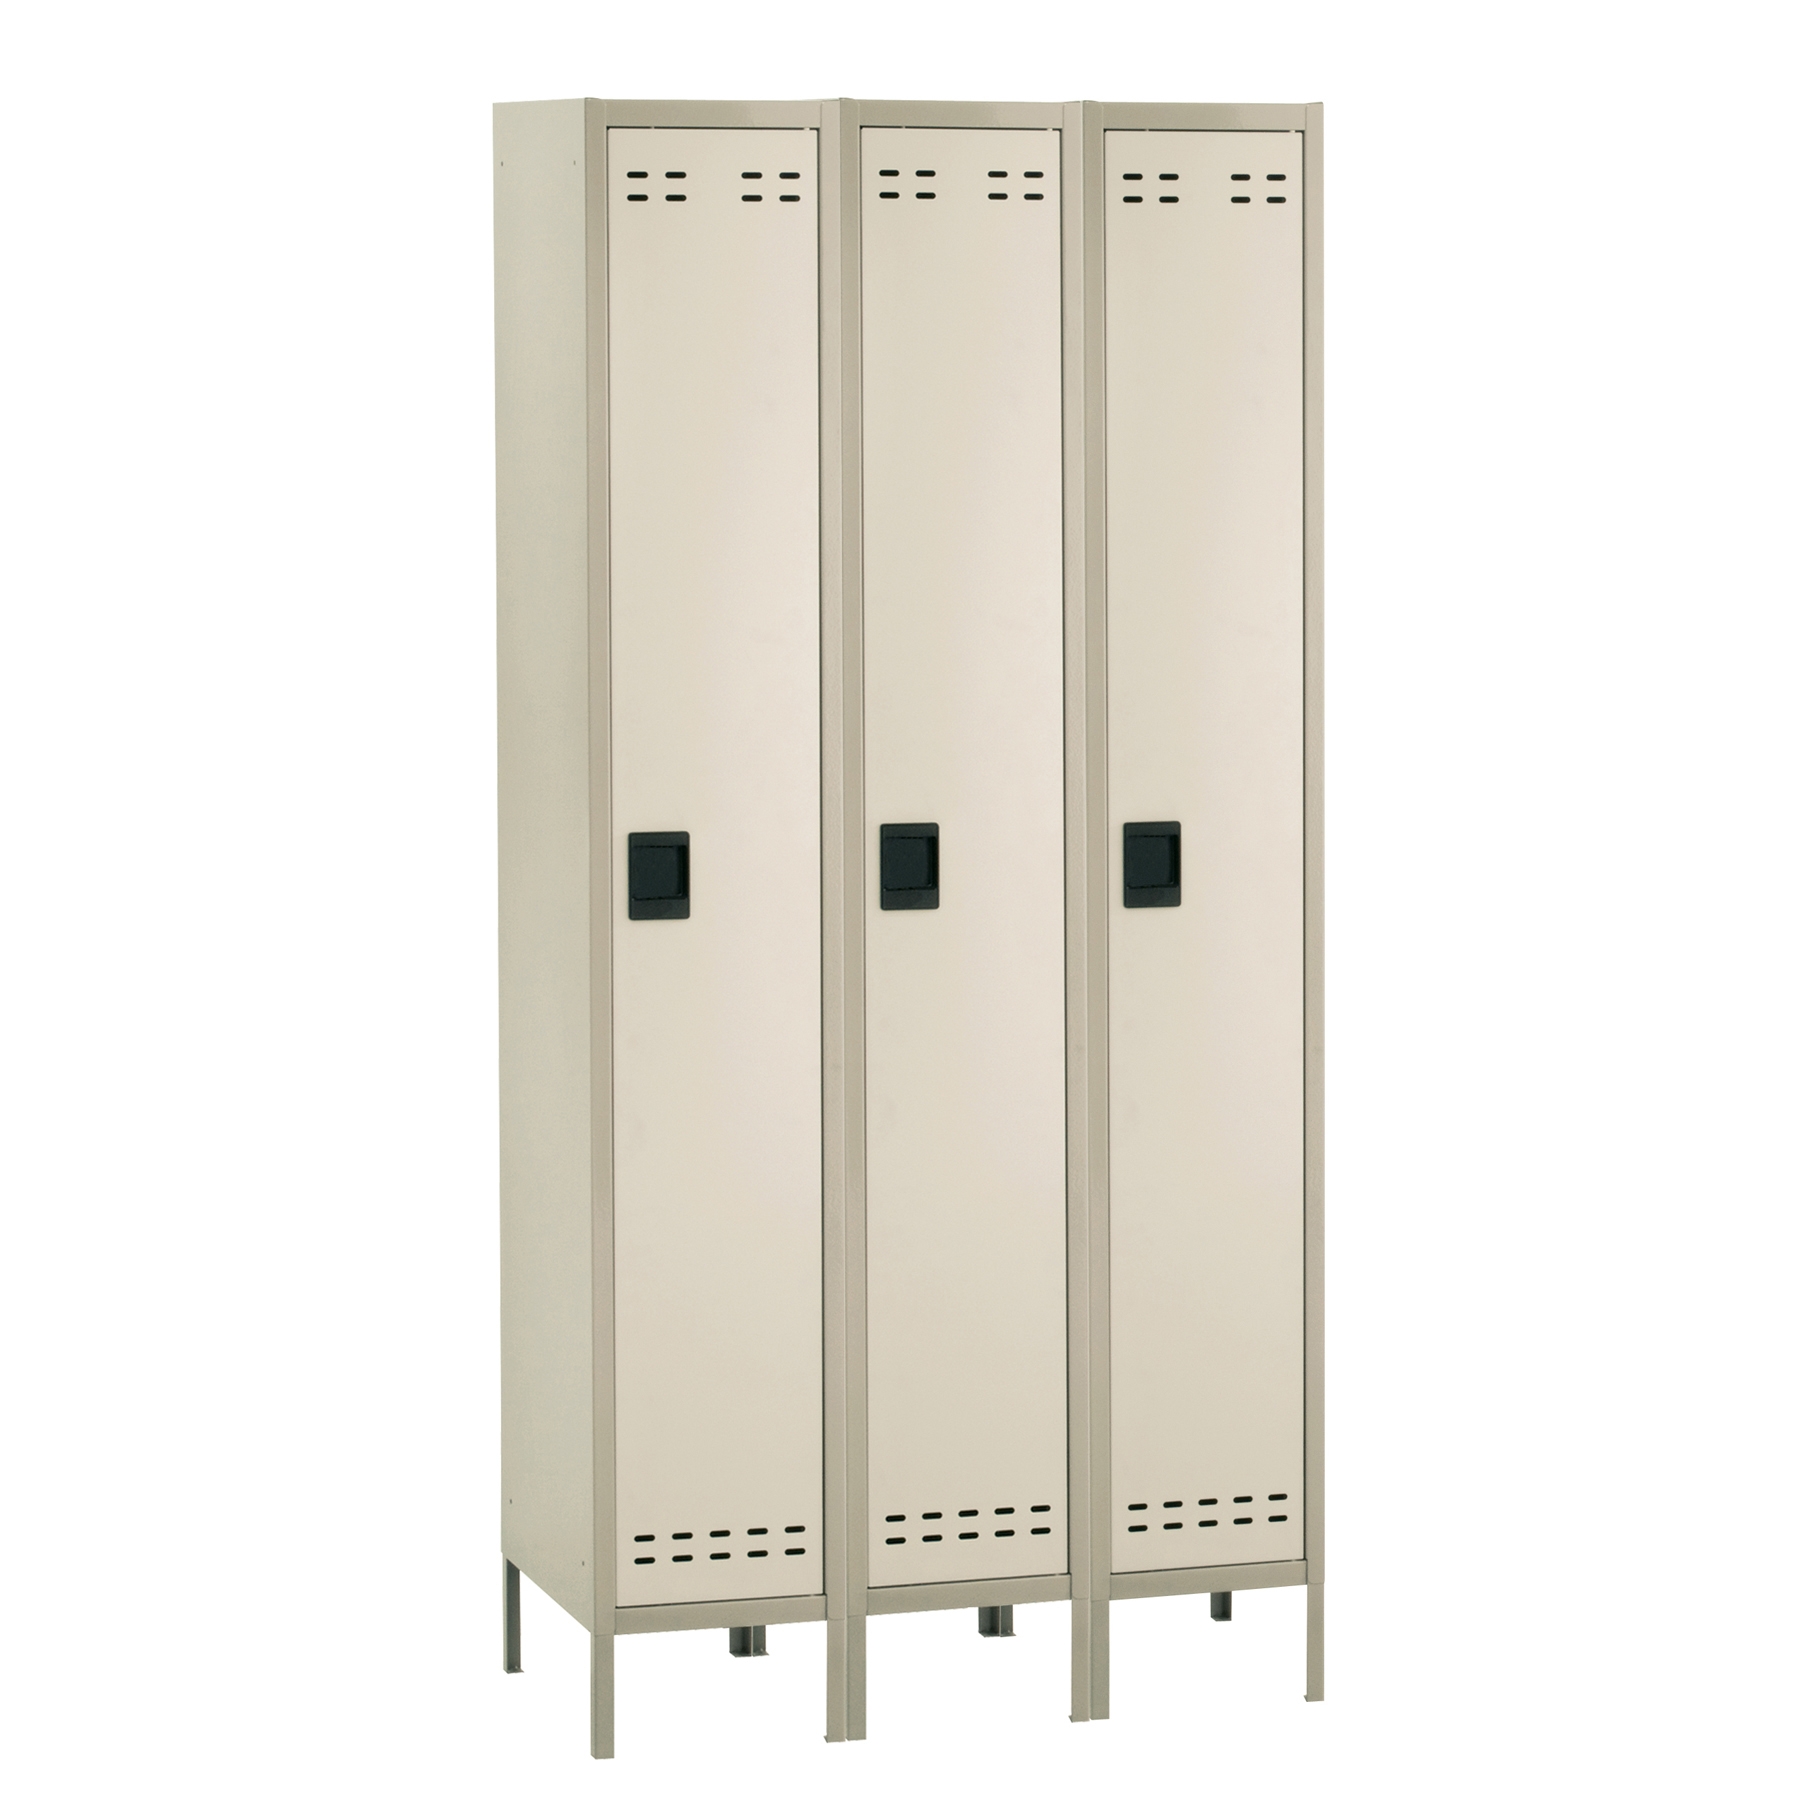 Metal lockers CUB 5525TN FAS